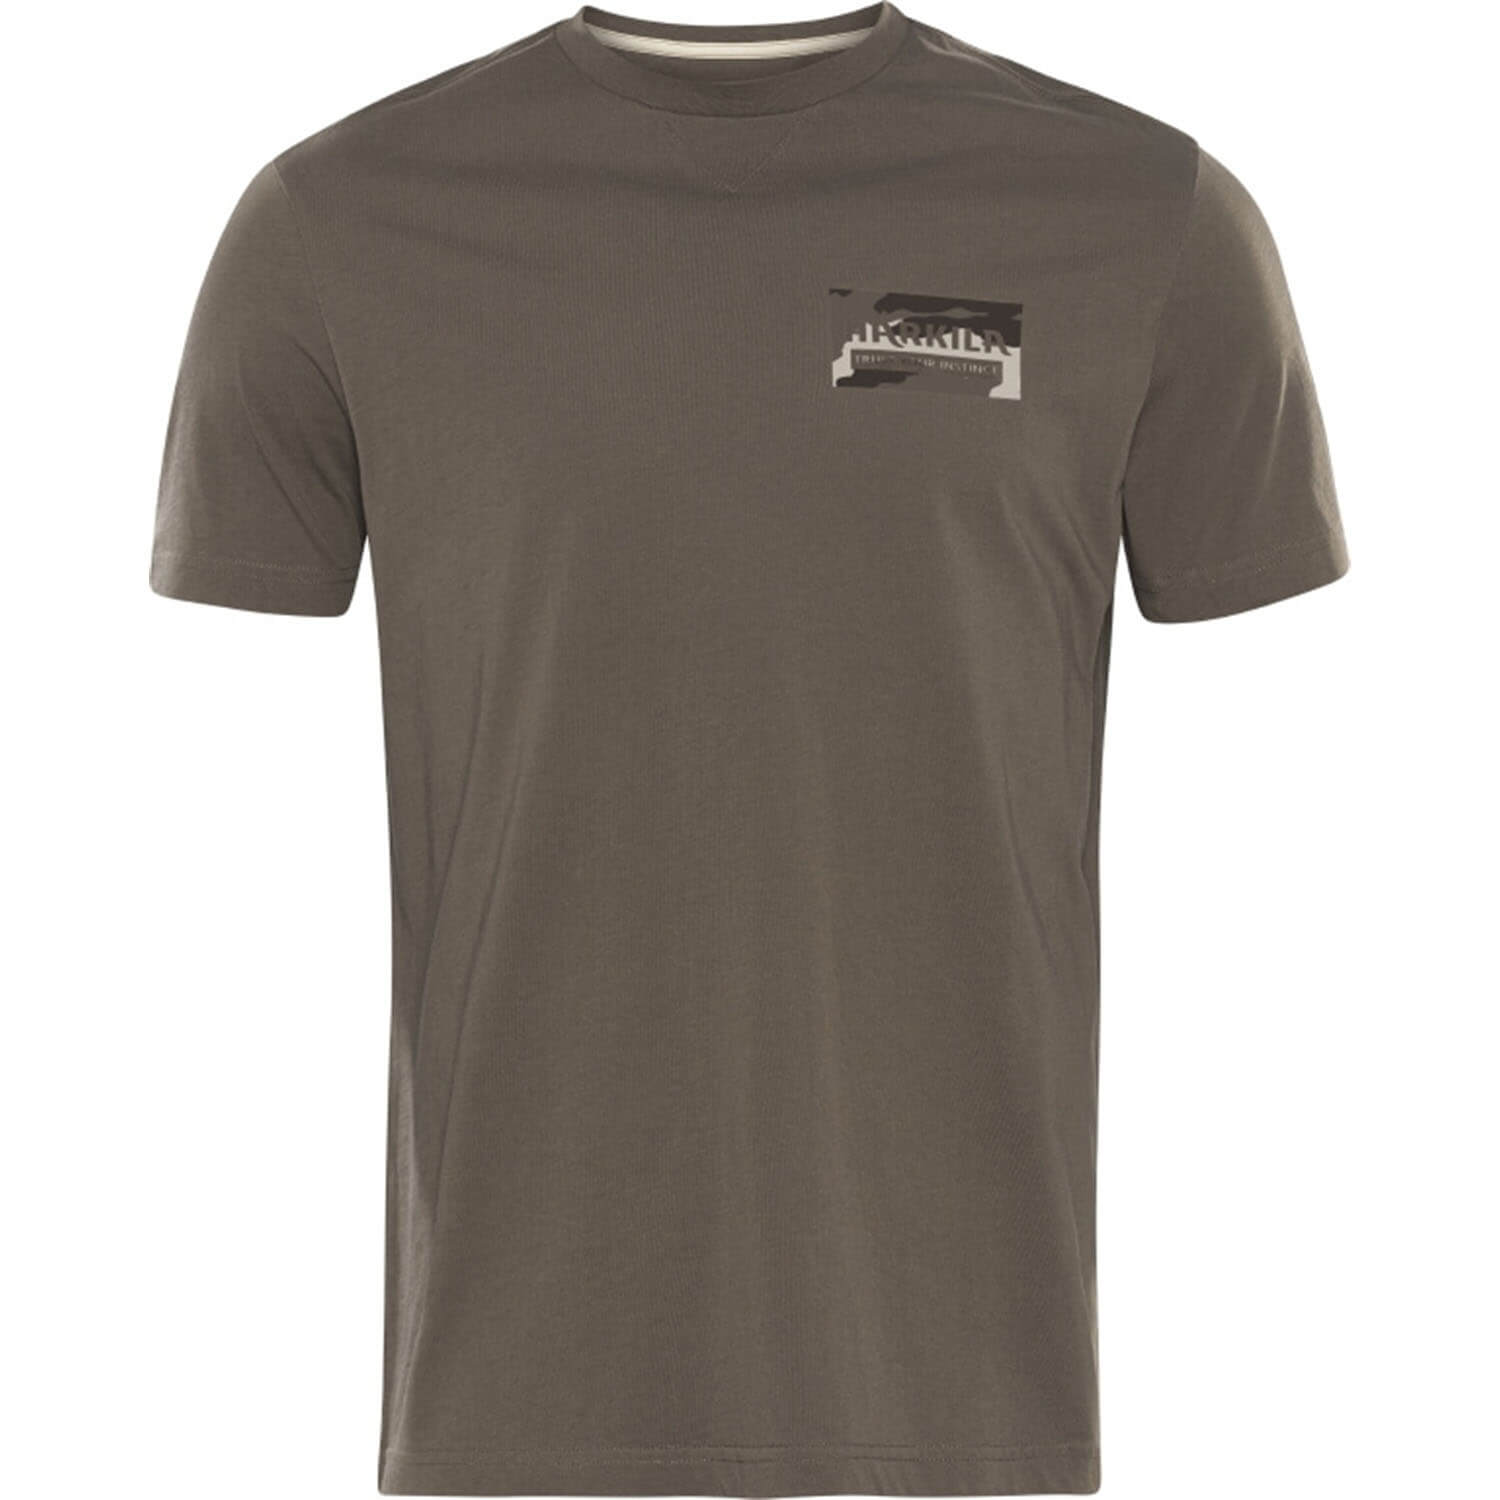 Härkila T-Shirt Core (Braun) - Sommer-Jagdbekleidung